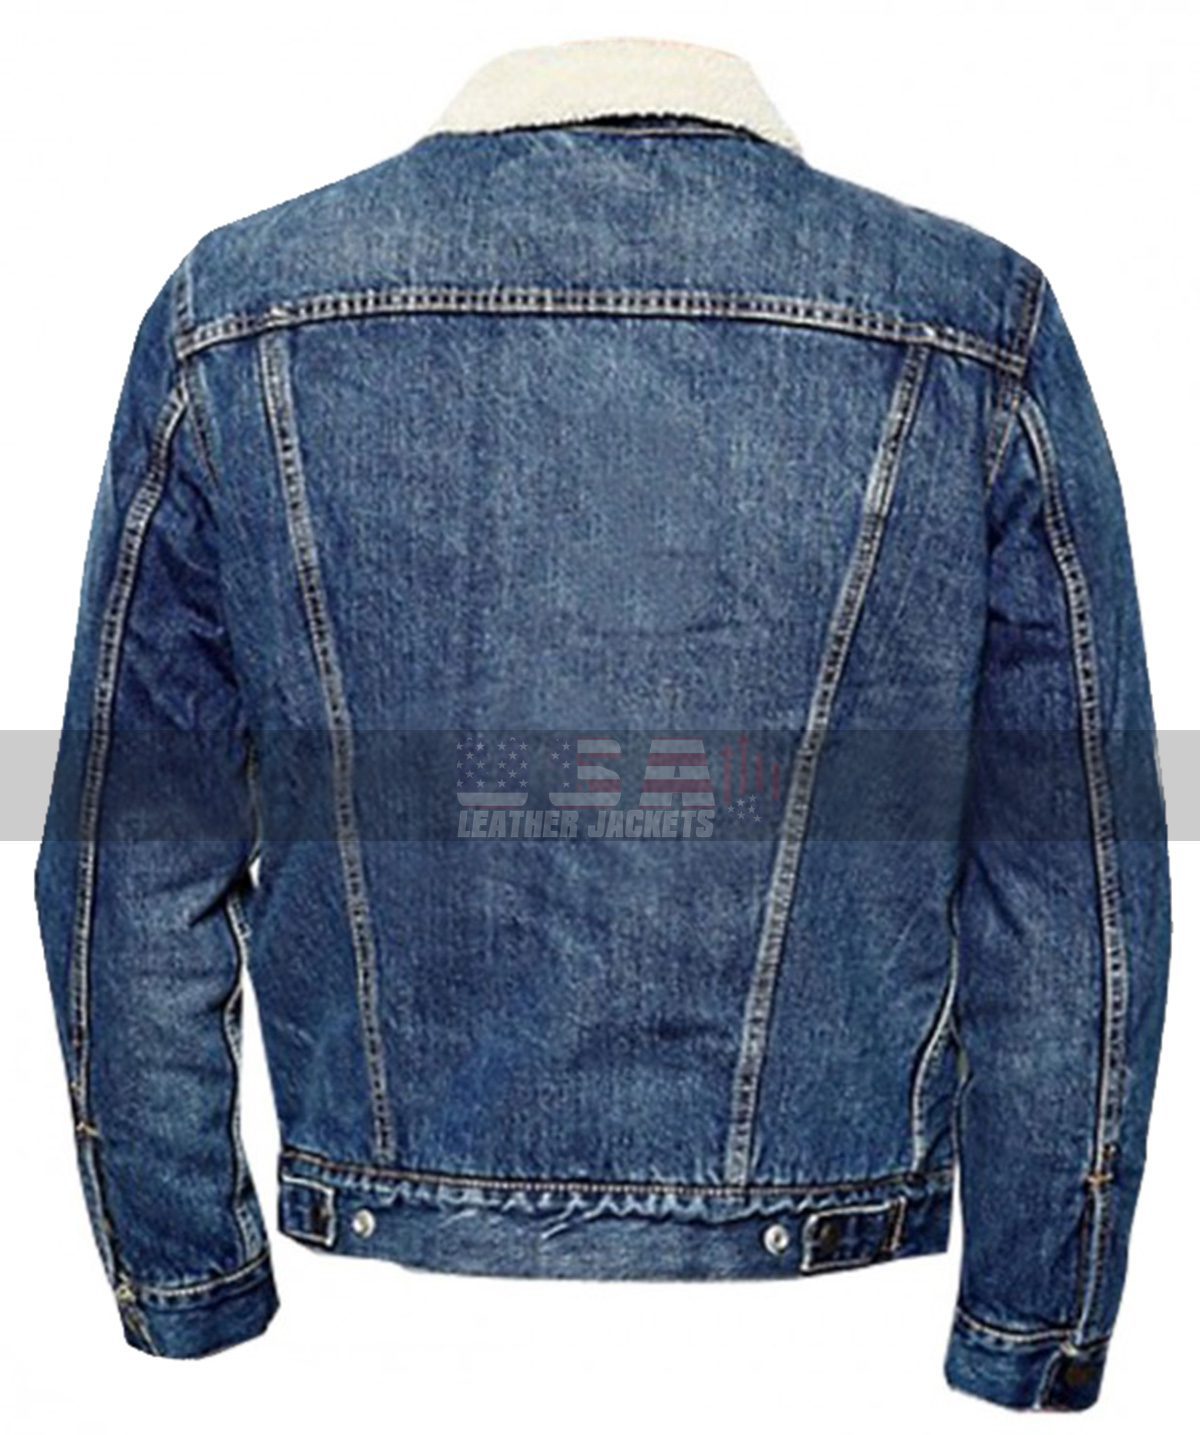 Riverdale Cole Sprouse Blue Denim Fur Jacket